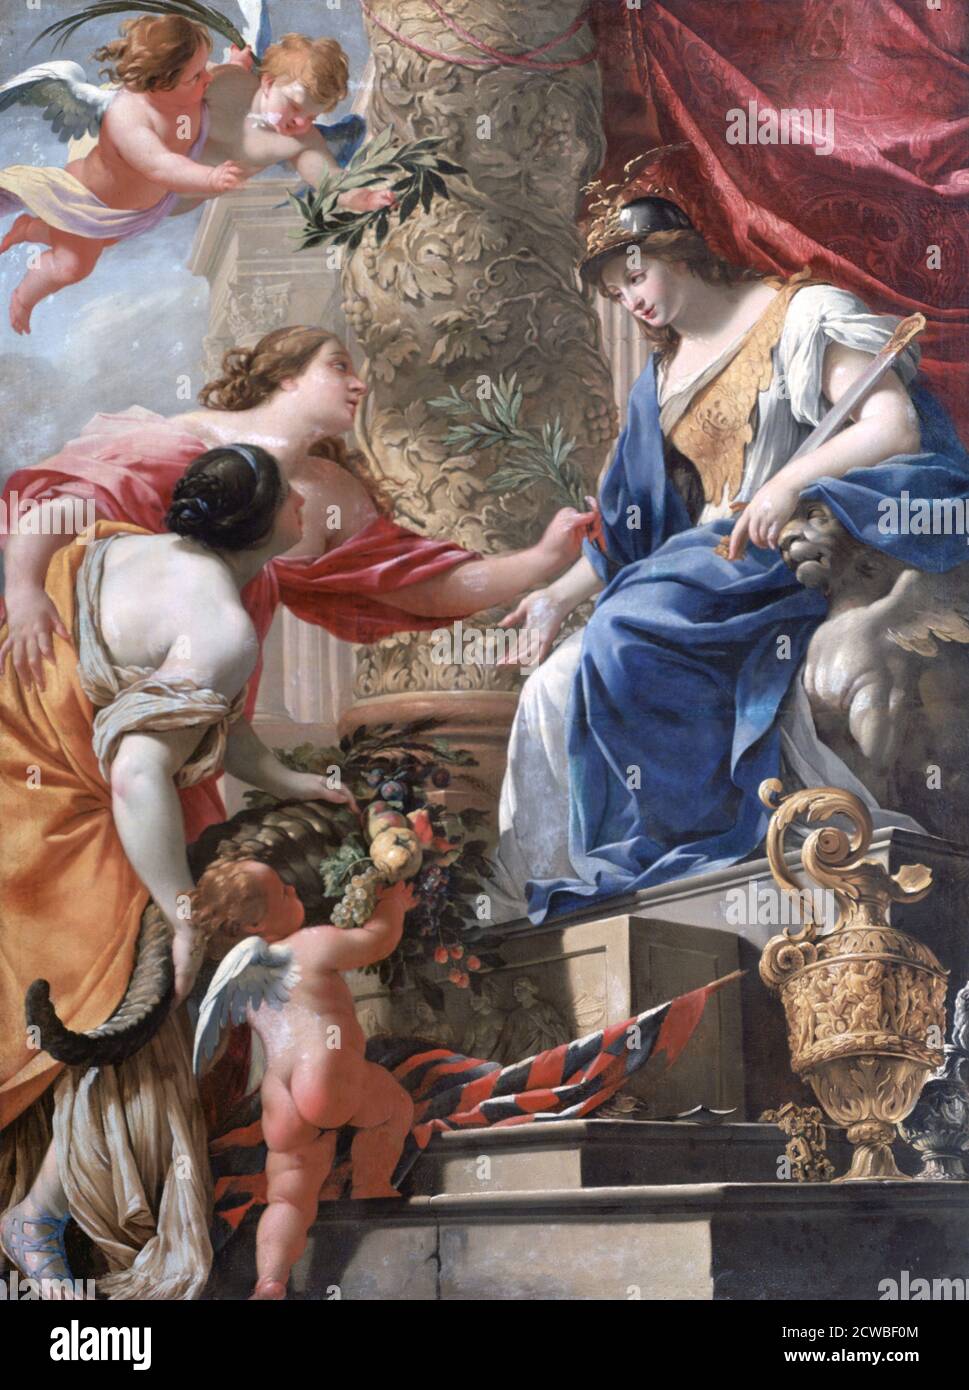 Venus et l'Amour' c1535-1560. Künstler: Lambert Sustris. Lambert Sustris (c1515-1584) war ein niederländischer Maler, der hauptsächlich in Venedig tätig war. Die in Italien vollendeten Werke Sustris zeigen einen manieristischen Stil. Stockfoto